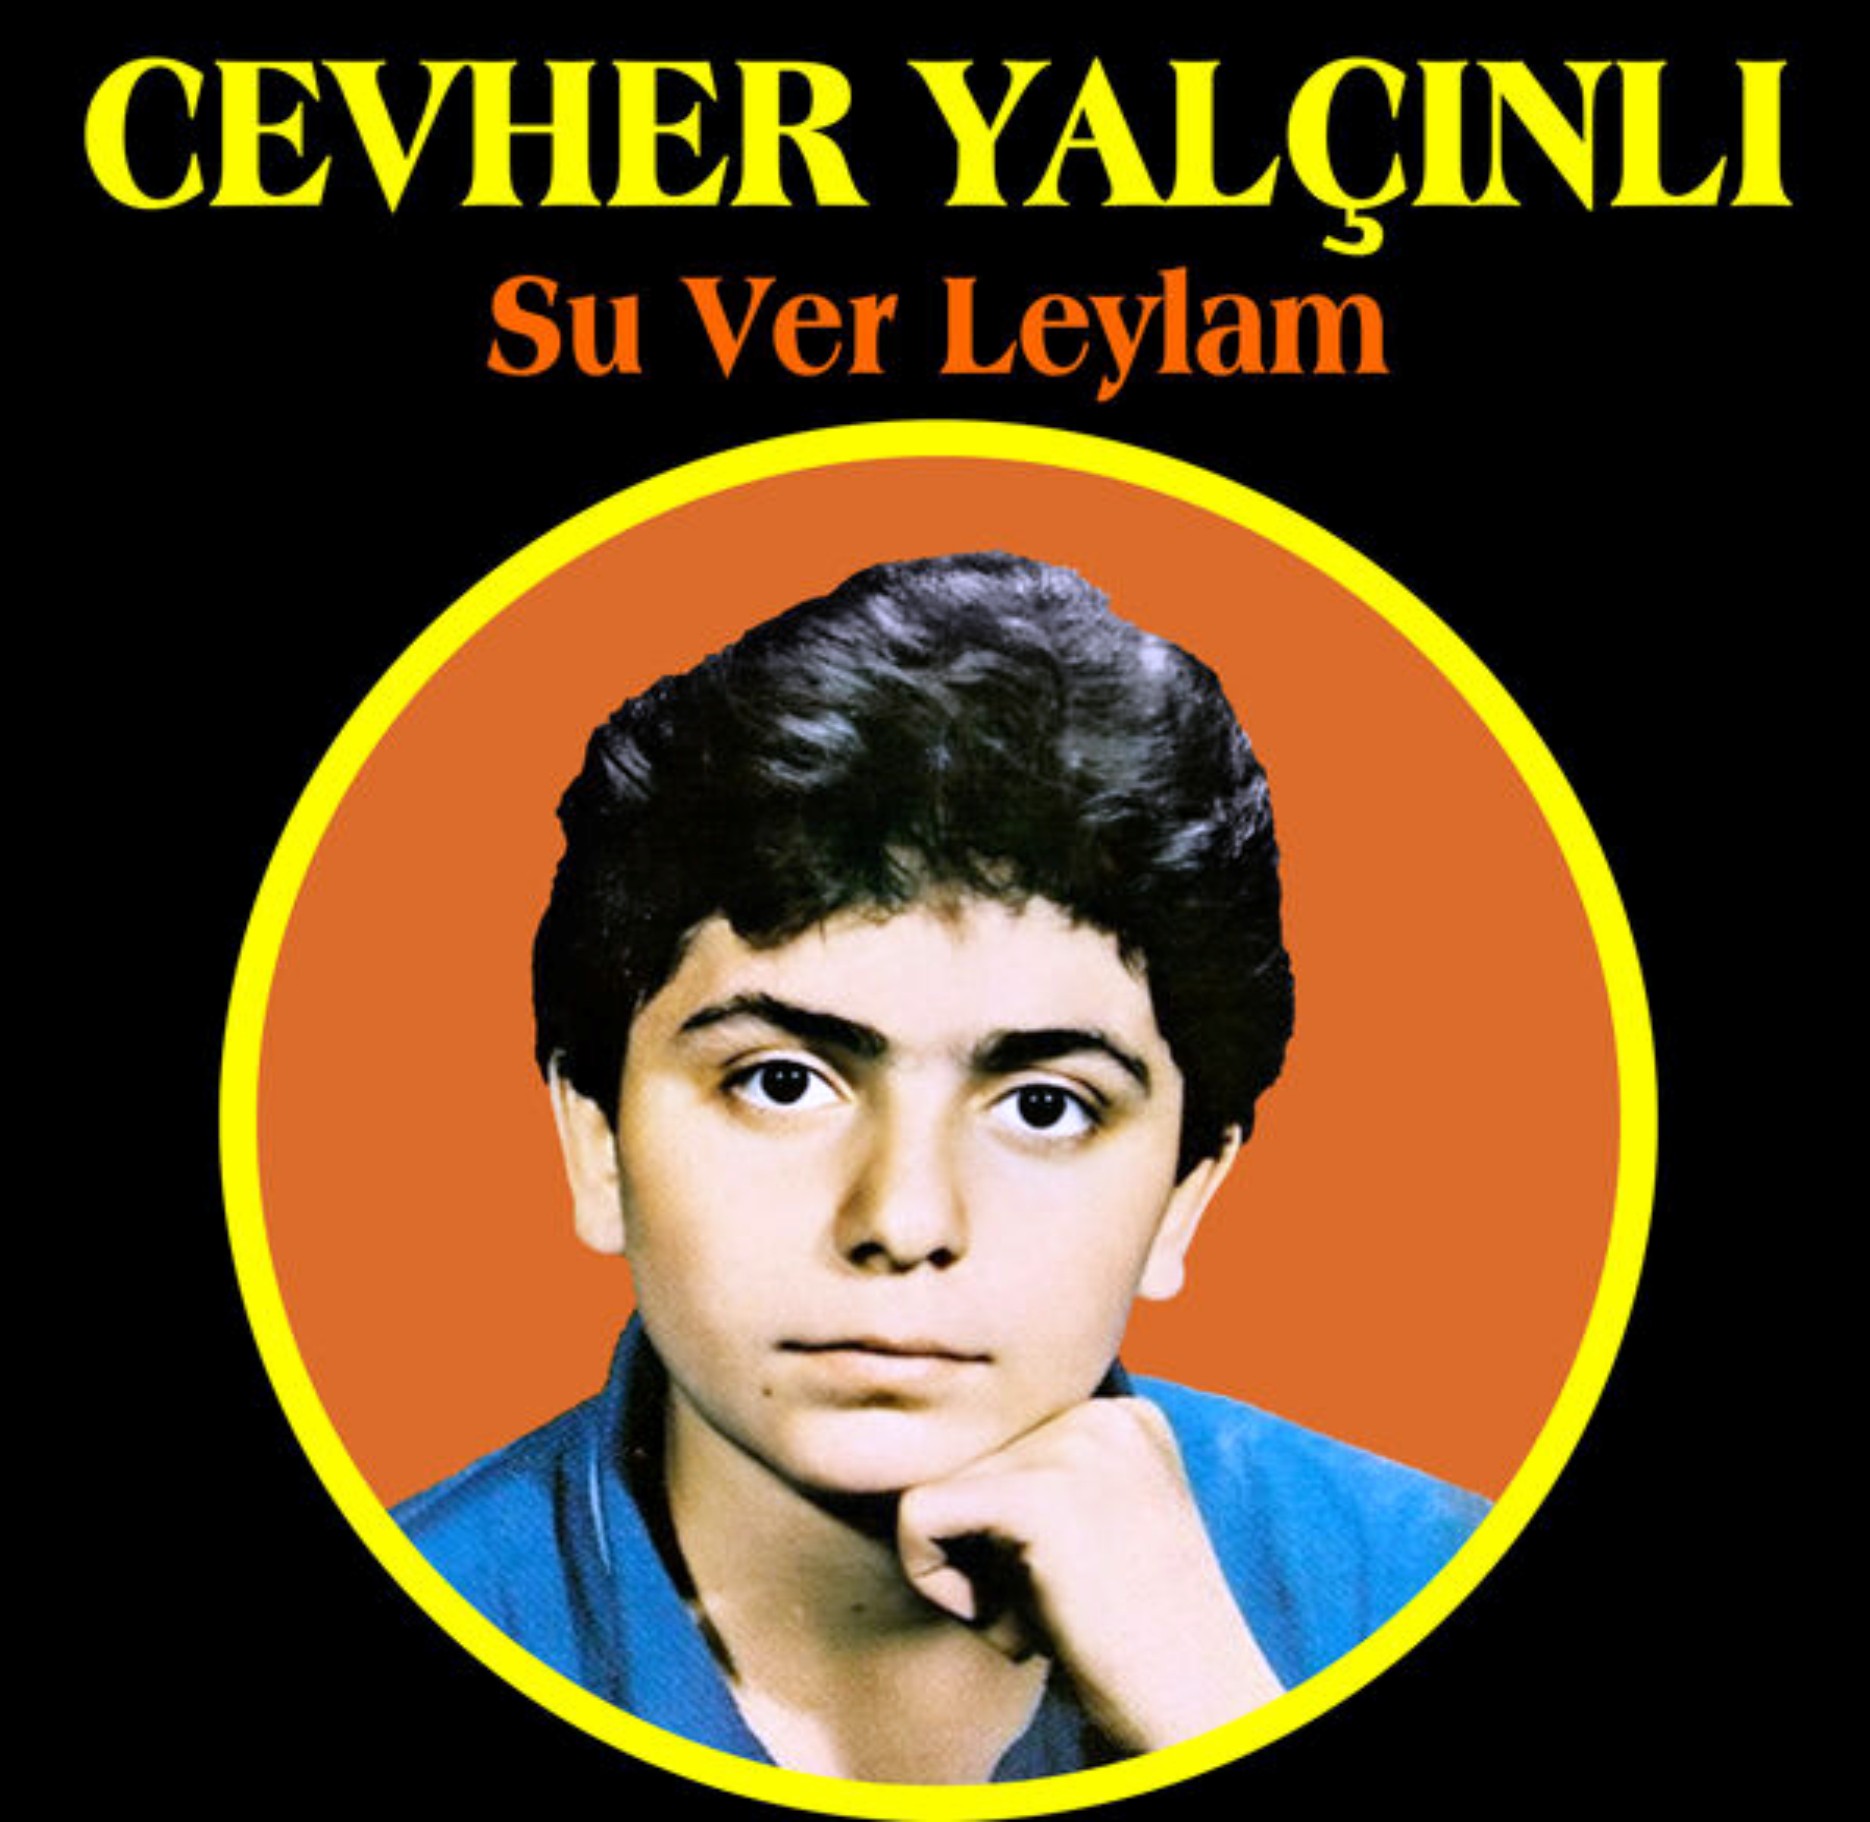 Cevher Yalcinli - Su Ver Leyla (Yalcin Plak) (1979) 1